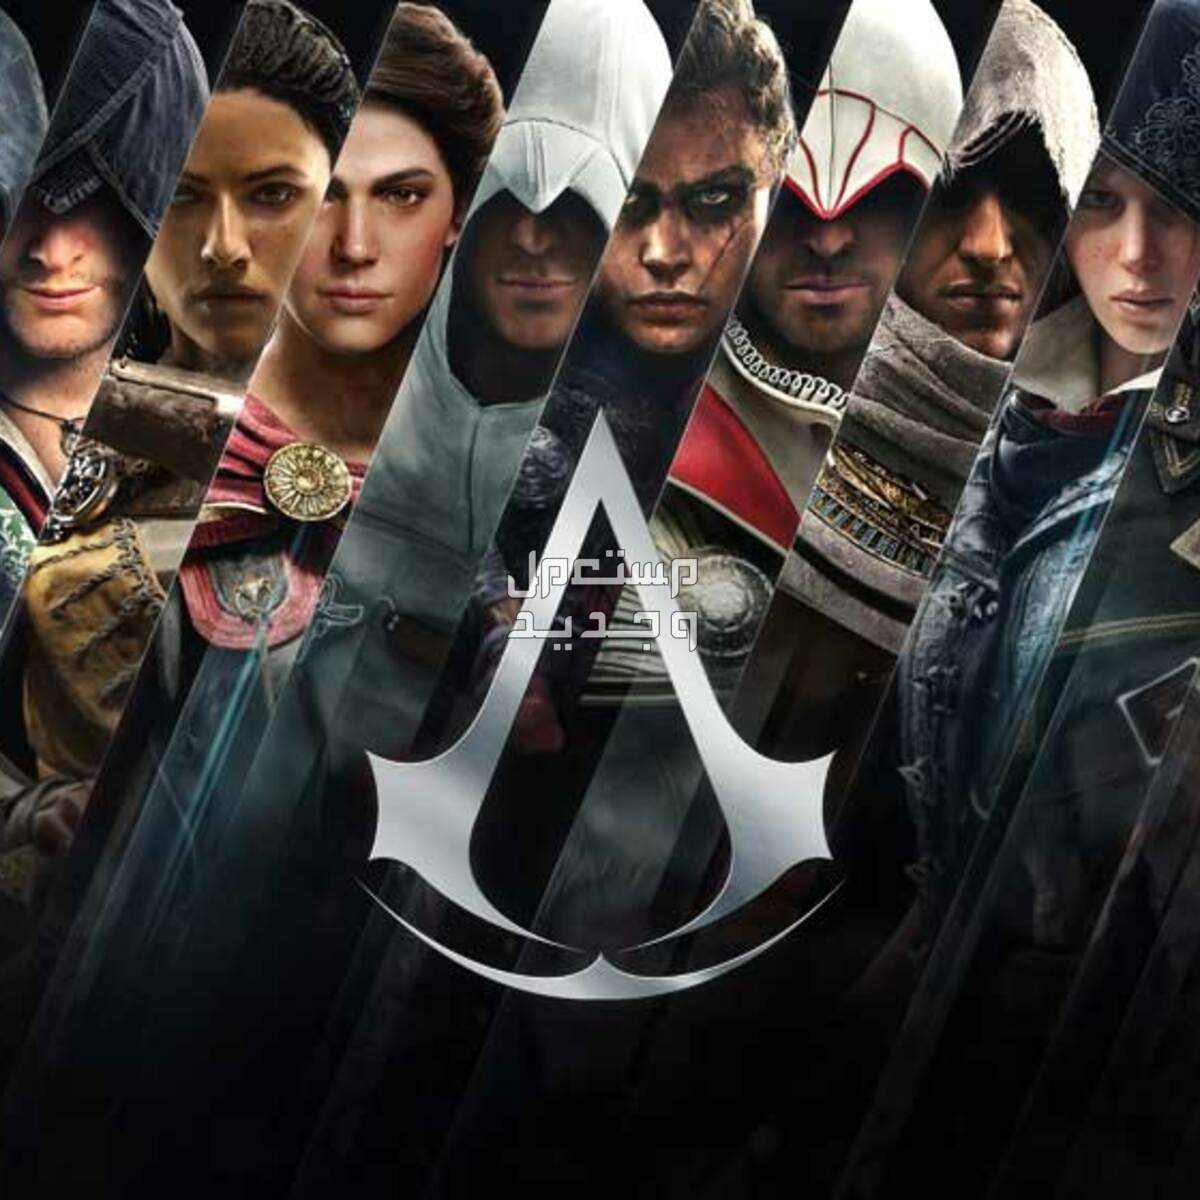 معك لابتوب ألعاب؟ تسلى و تعلم التاريخ مع Assassin's Creed في الكويت سلسلة ألعاب أساسنز كريد